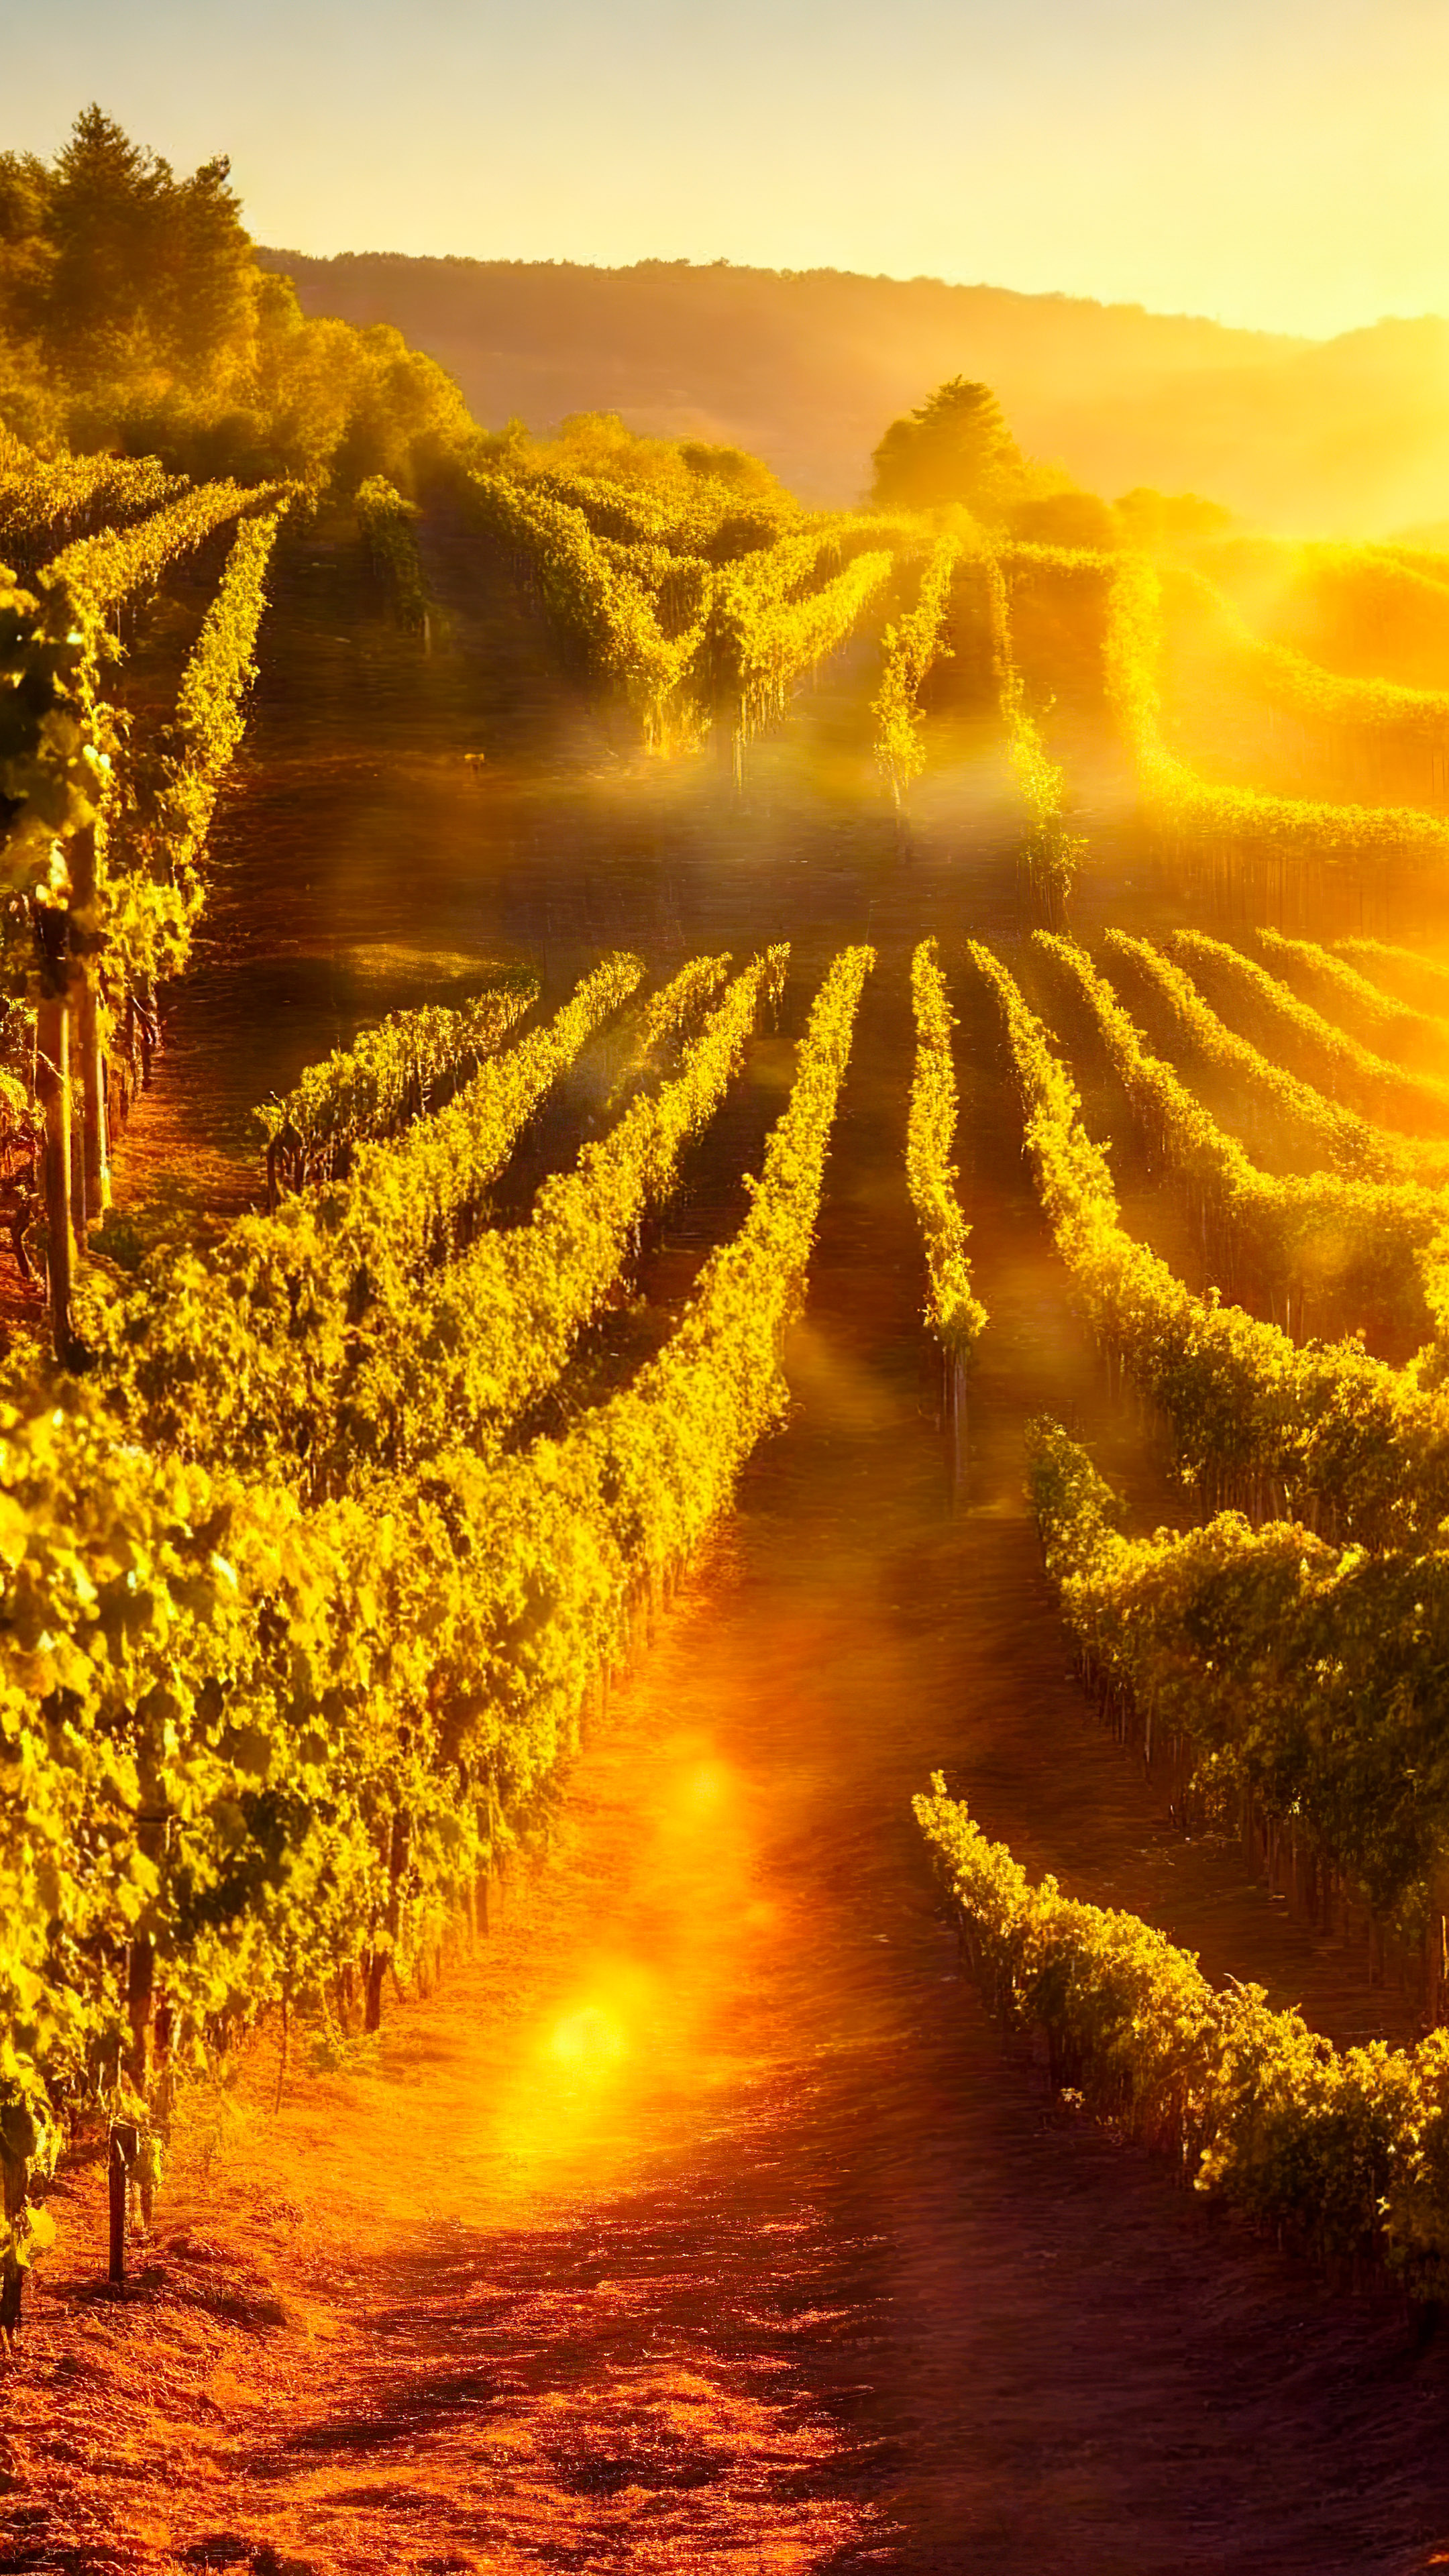 Profitez de la chaleur de notre fond d'écran nature pour iPhone XS, présentant un vignoble pittoresque baigné de lumière solaire dorée, avec des rangées de vignes s'étendant à l'horizon.